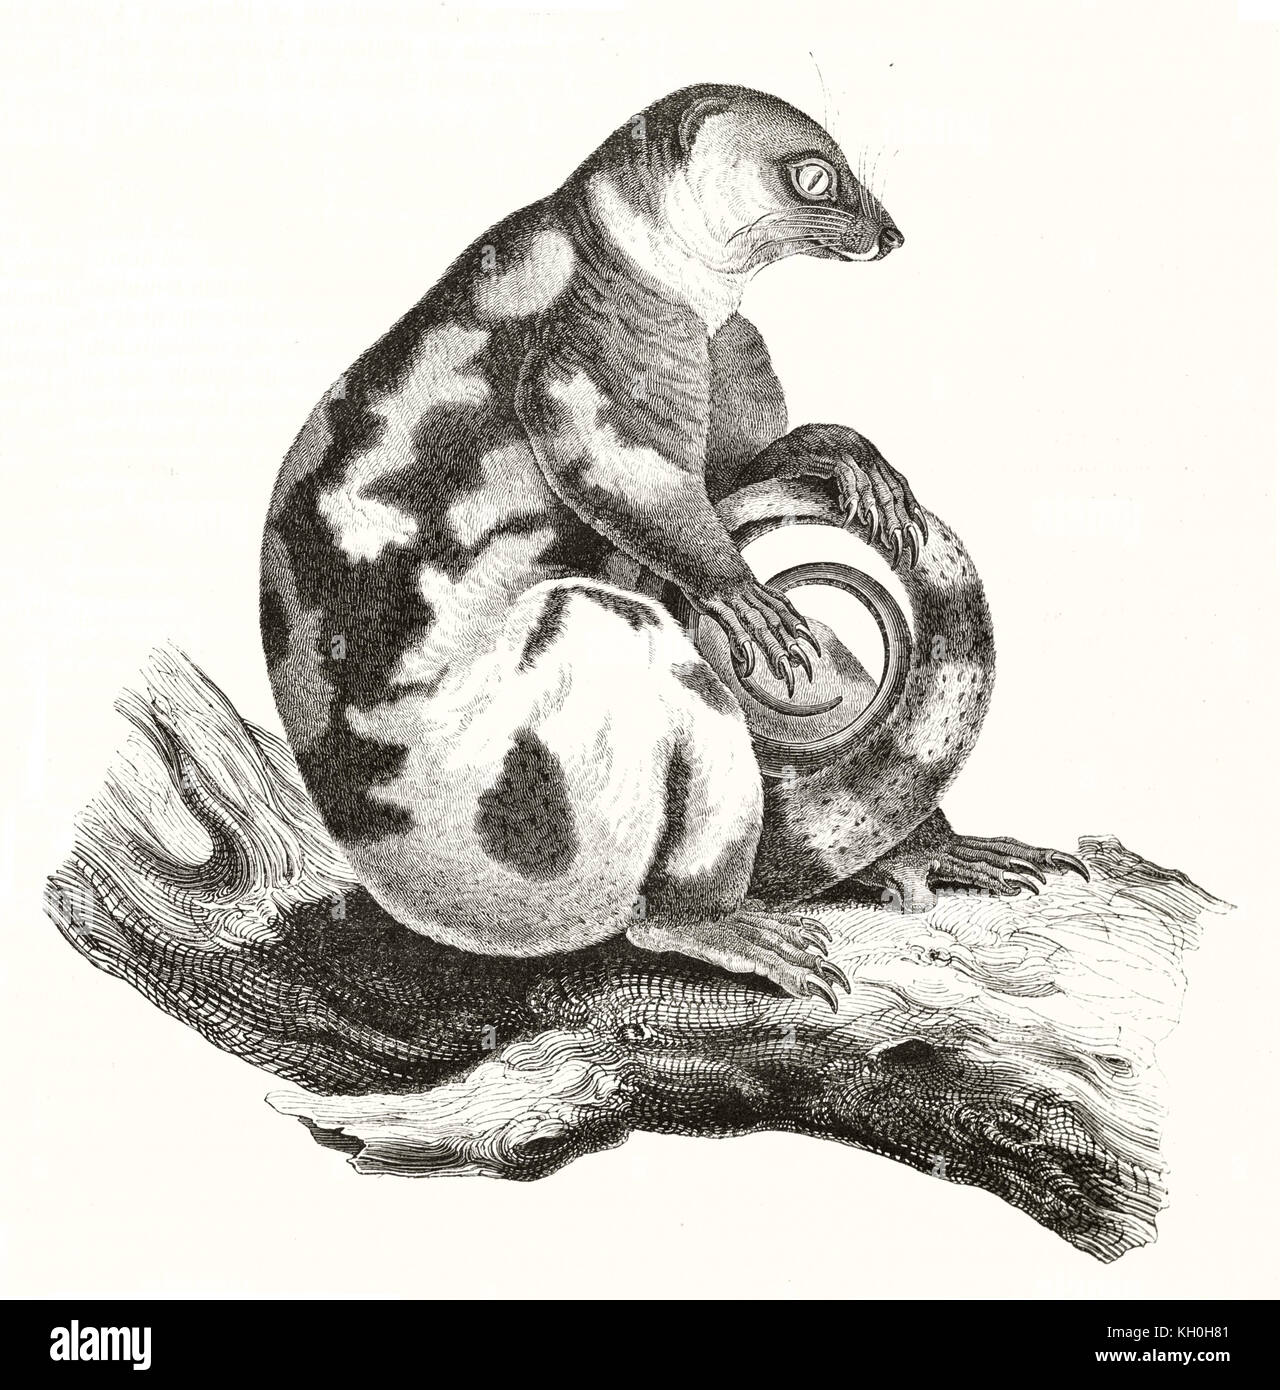 Ancienne commune de l'illustration gravée le couscous tacheté (Spilocuscus maculatus). Par auteur non identifié, publ. sur Magasin Pittoresque, Paris, 1847 Banque D'Images